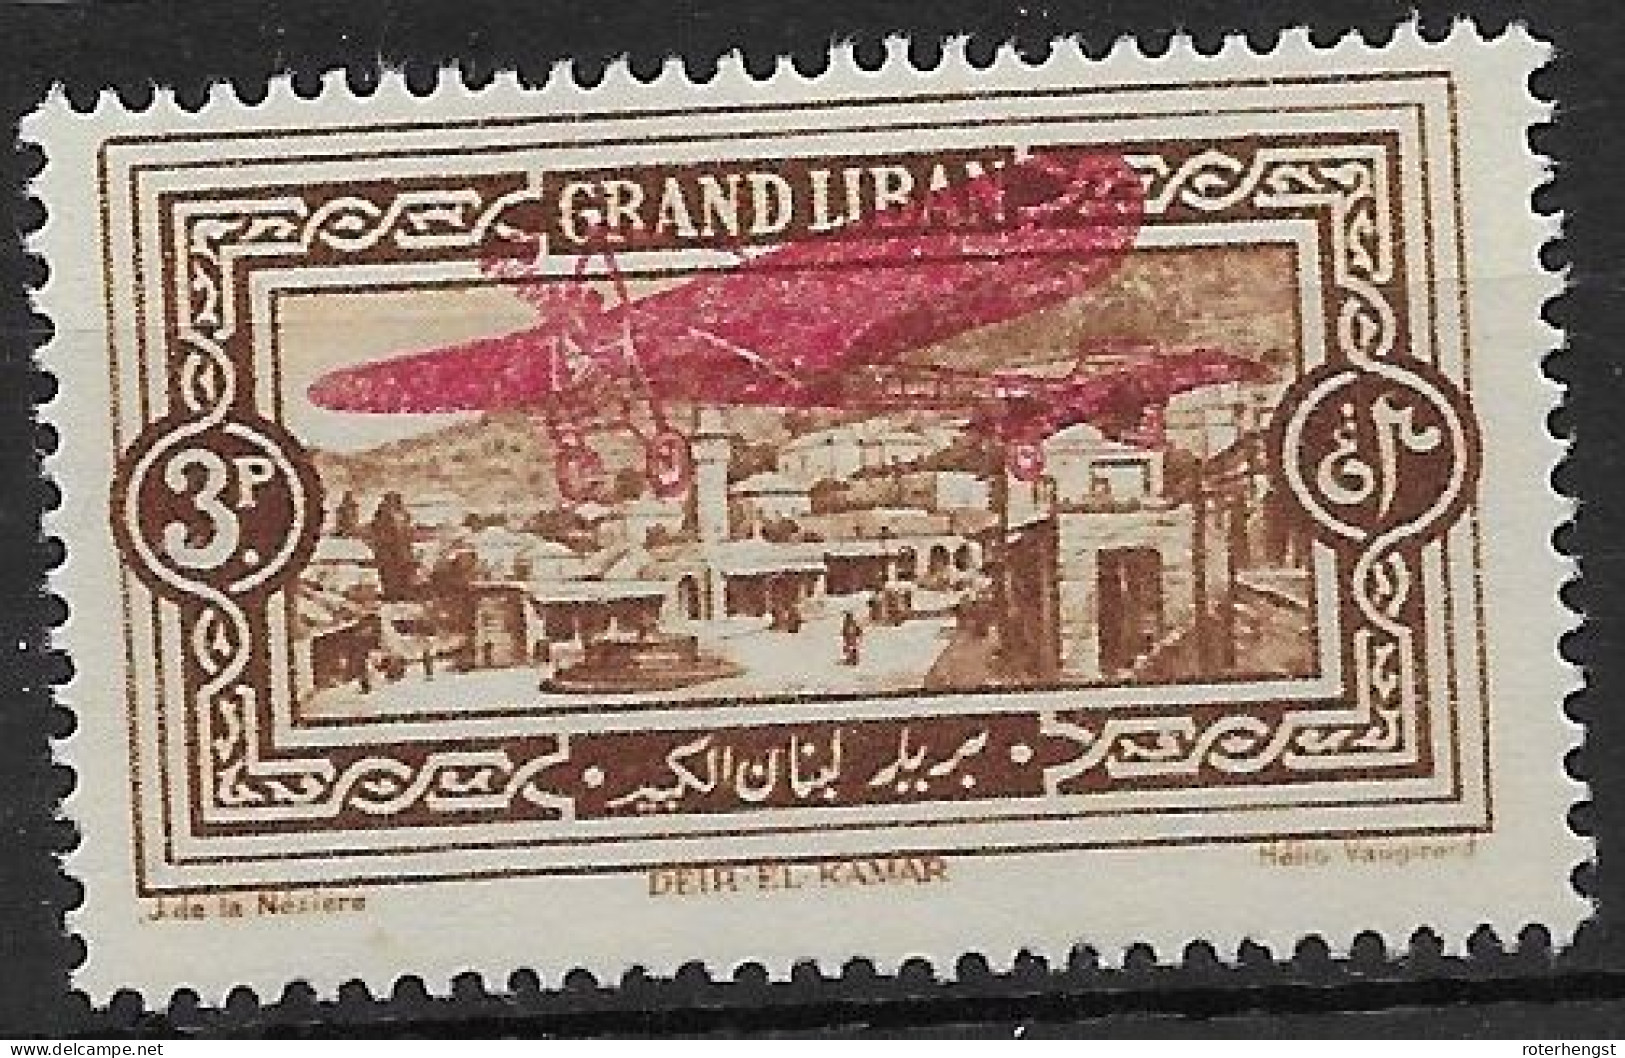 Grand Liban 1926 Airmail Mh* 5 Euros - Poste Aérienne